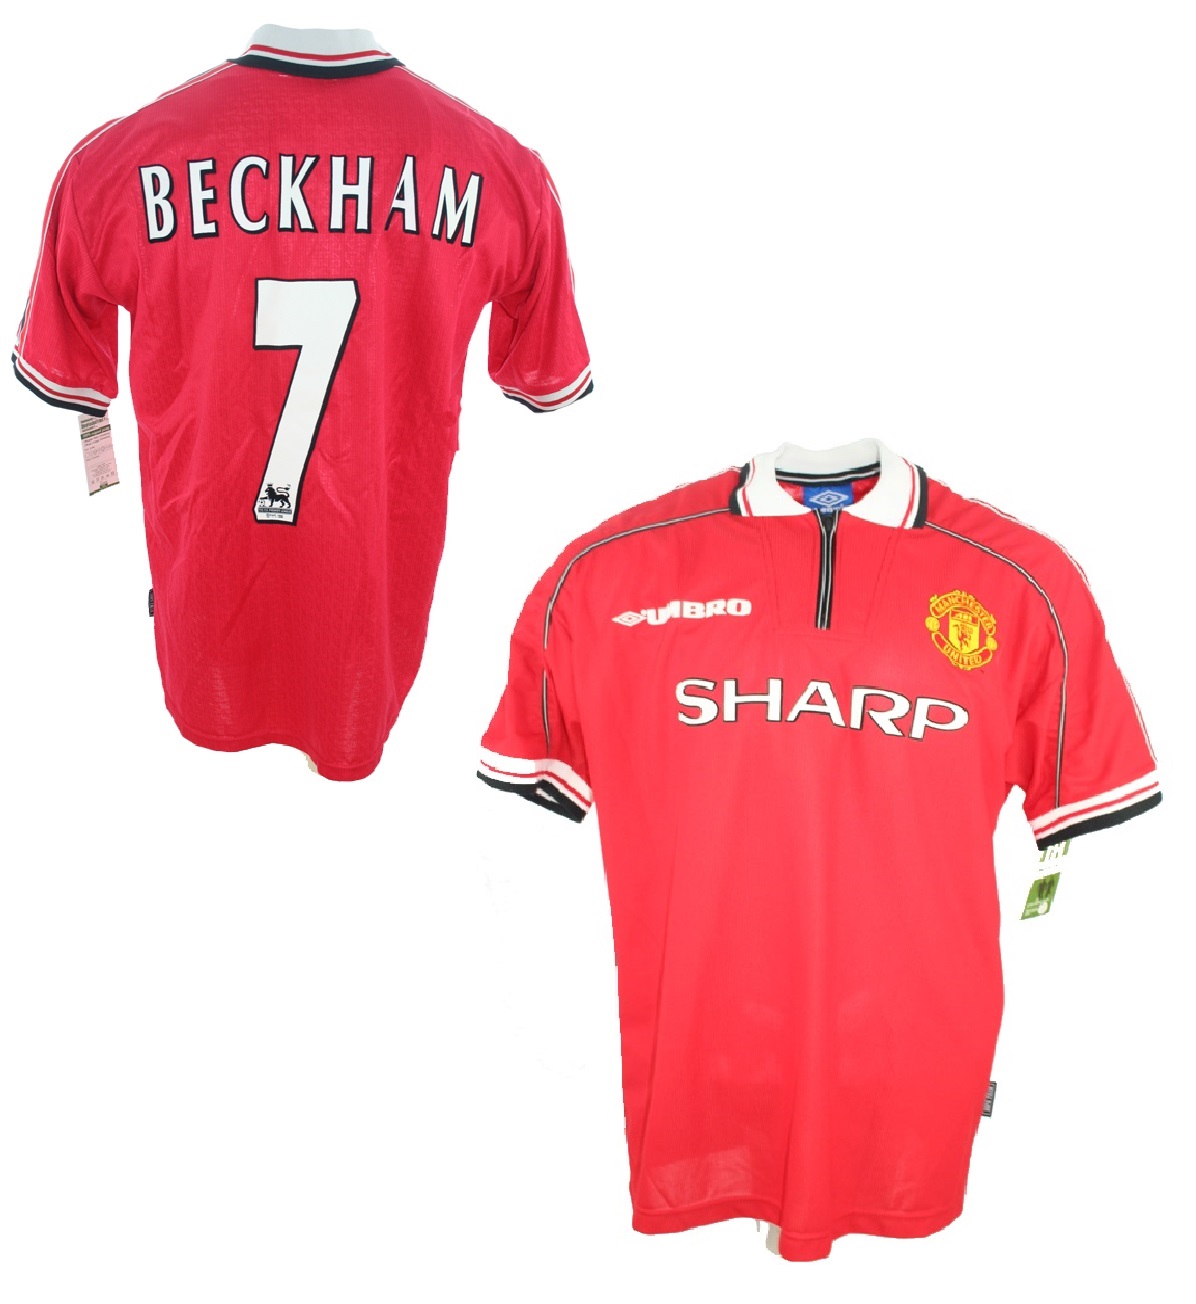 Umbro Manchester United camiseta 7 David Beckham 1998/99 Señor S/M/L/XL/XXL futbol maglia maillot tricot comprar tienda online shop - spieler-trikot.de retro futbol camiseta maglia maillot online shop